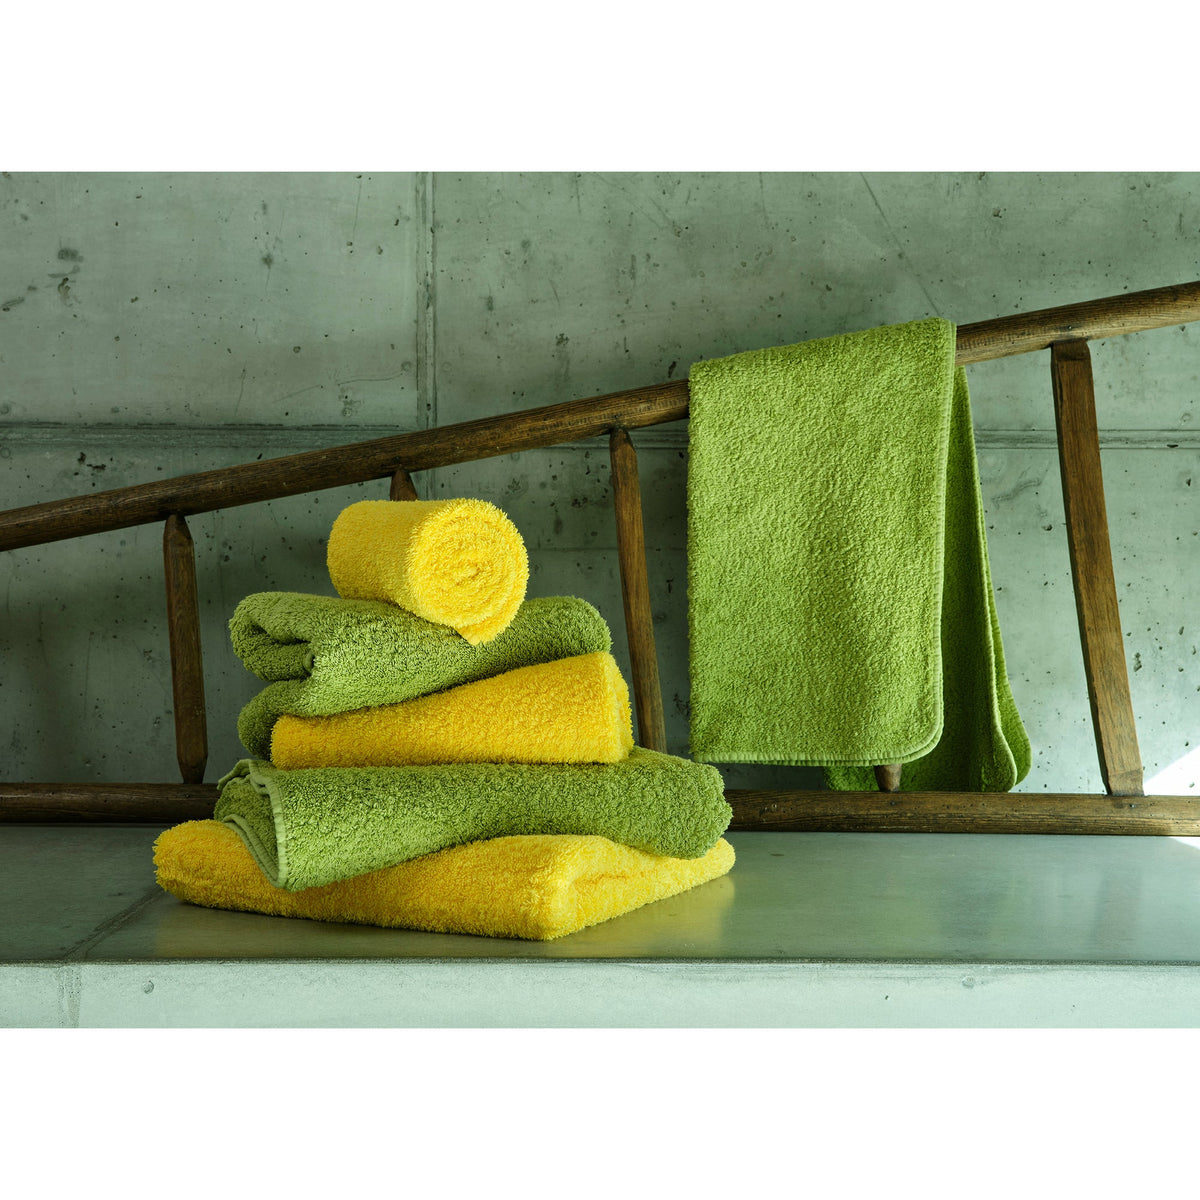 HOUSE & GARDEN KITCHEN TOWELS (3) PUMPKINS RUST GREEN 20 X 28 100% COTTON  NWT